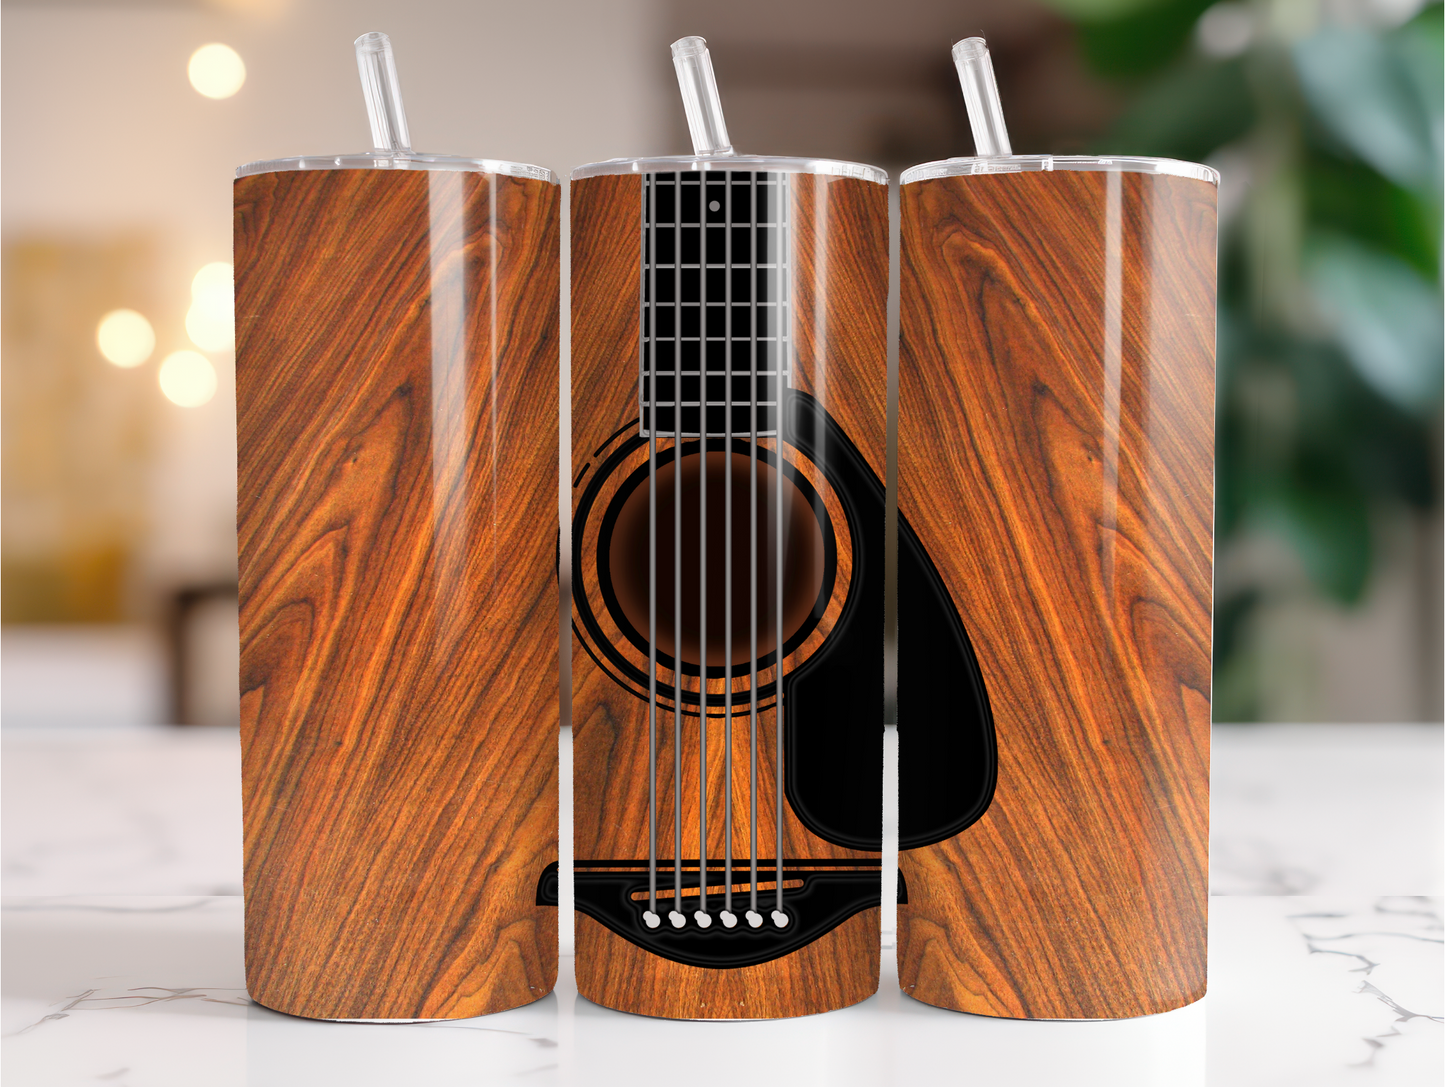 Wood grain guitar